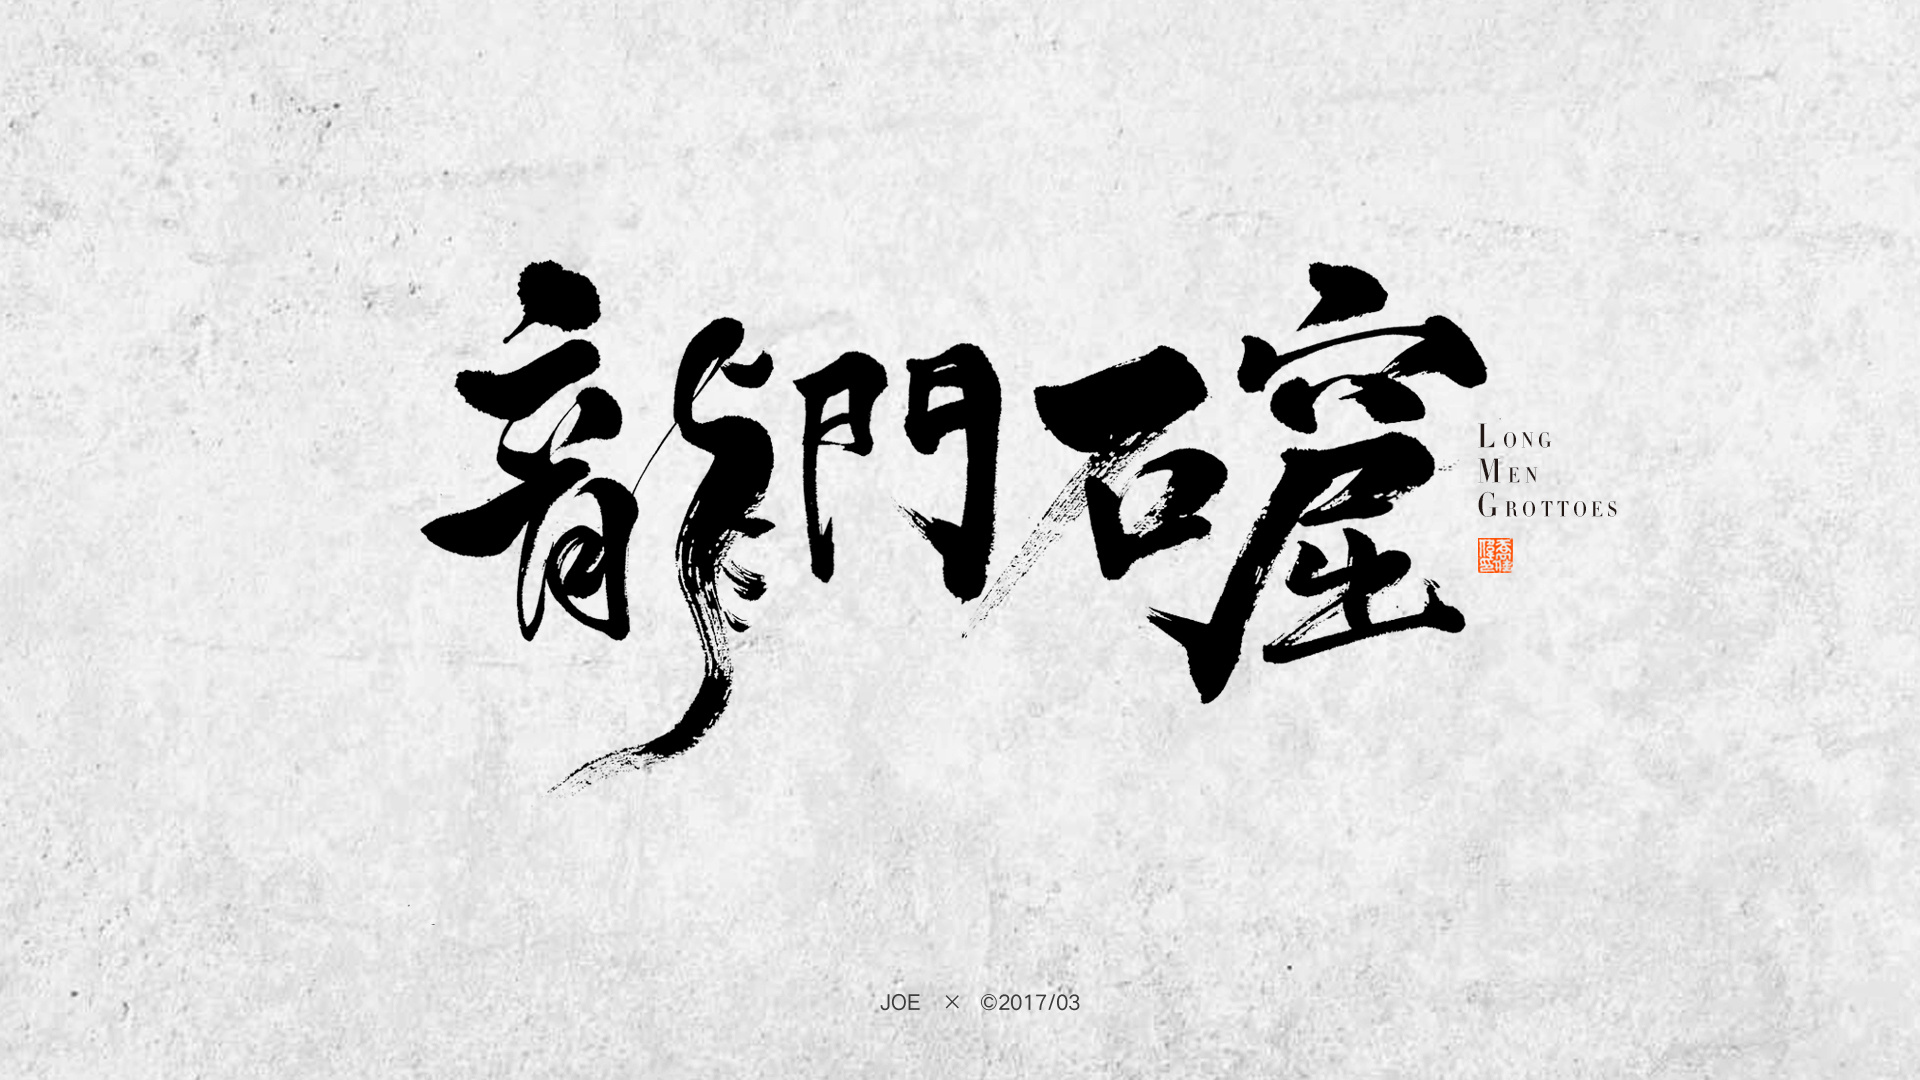 河南省城市字体海报设计（上） - 知乎